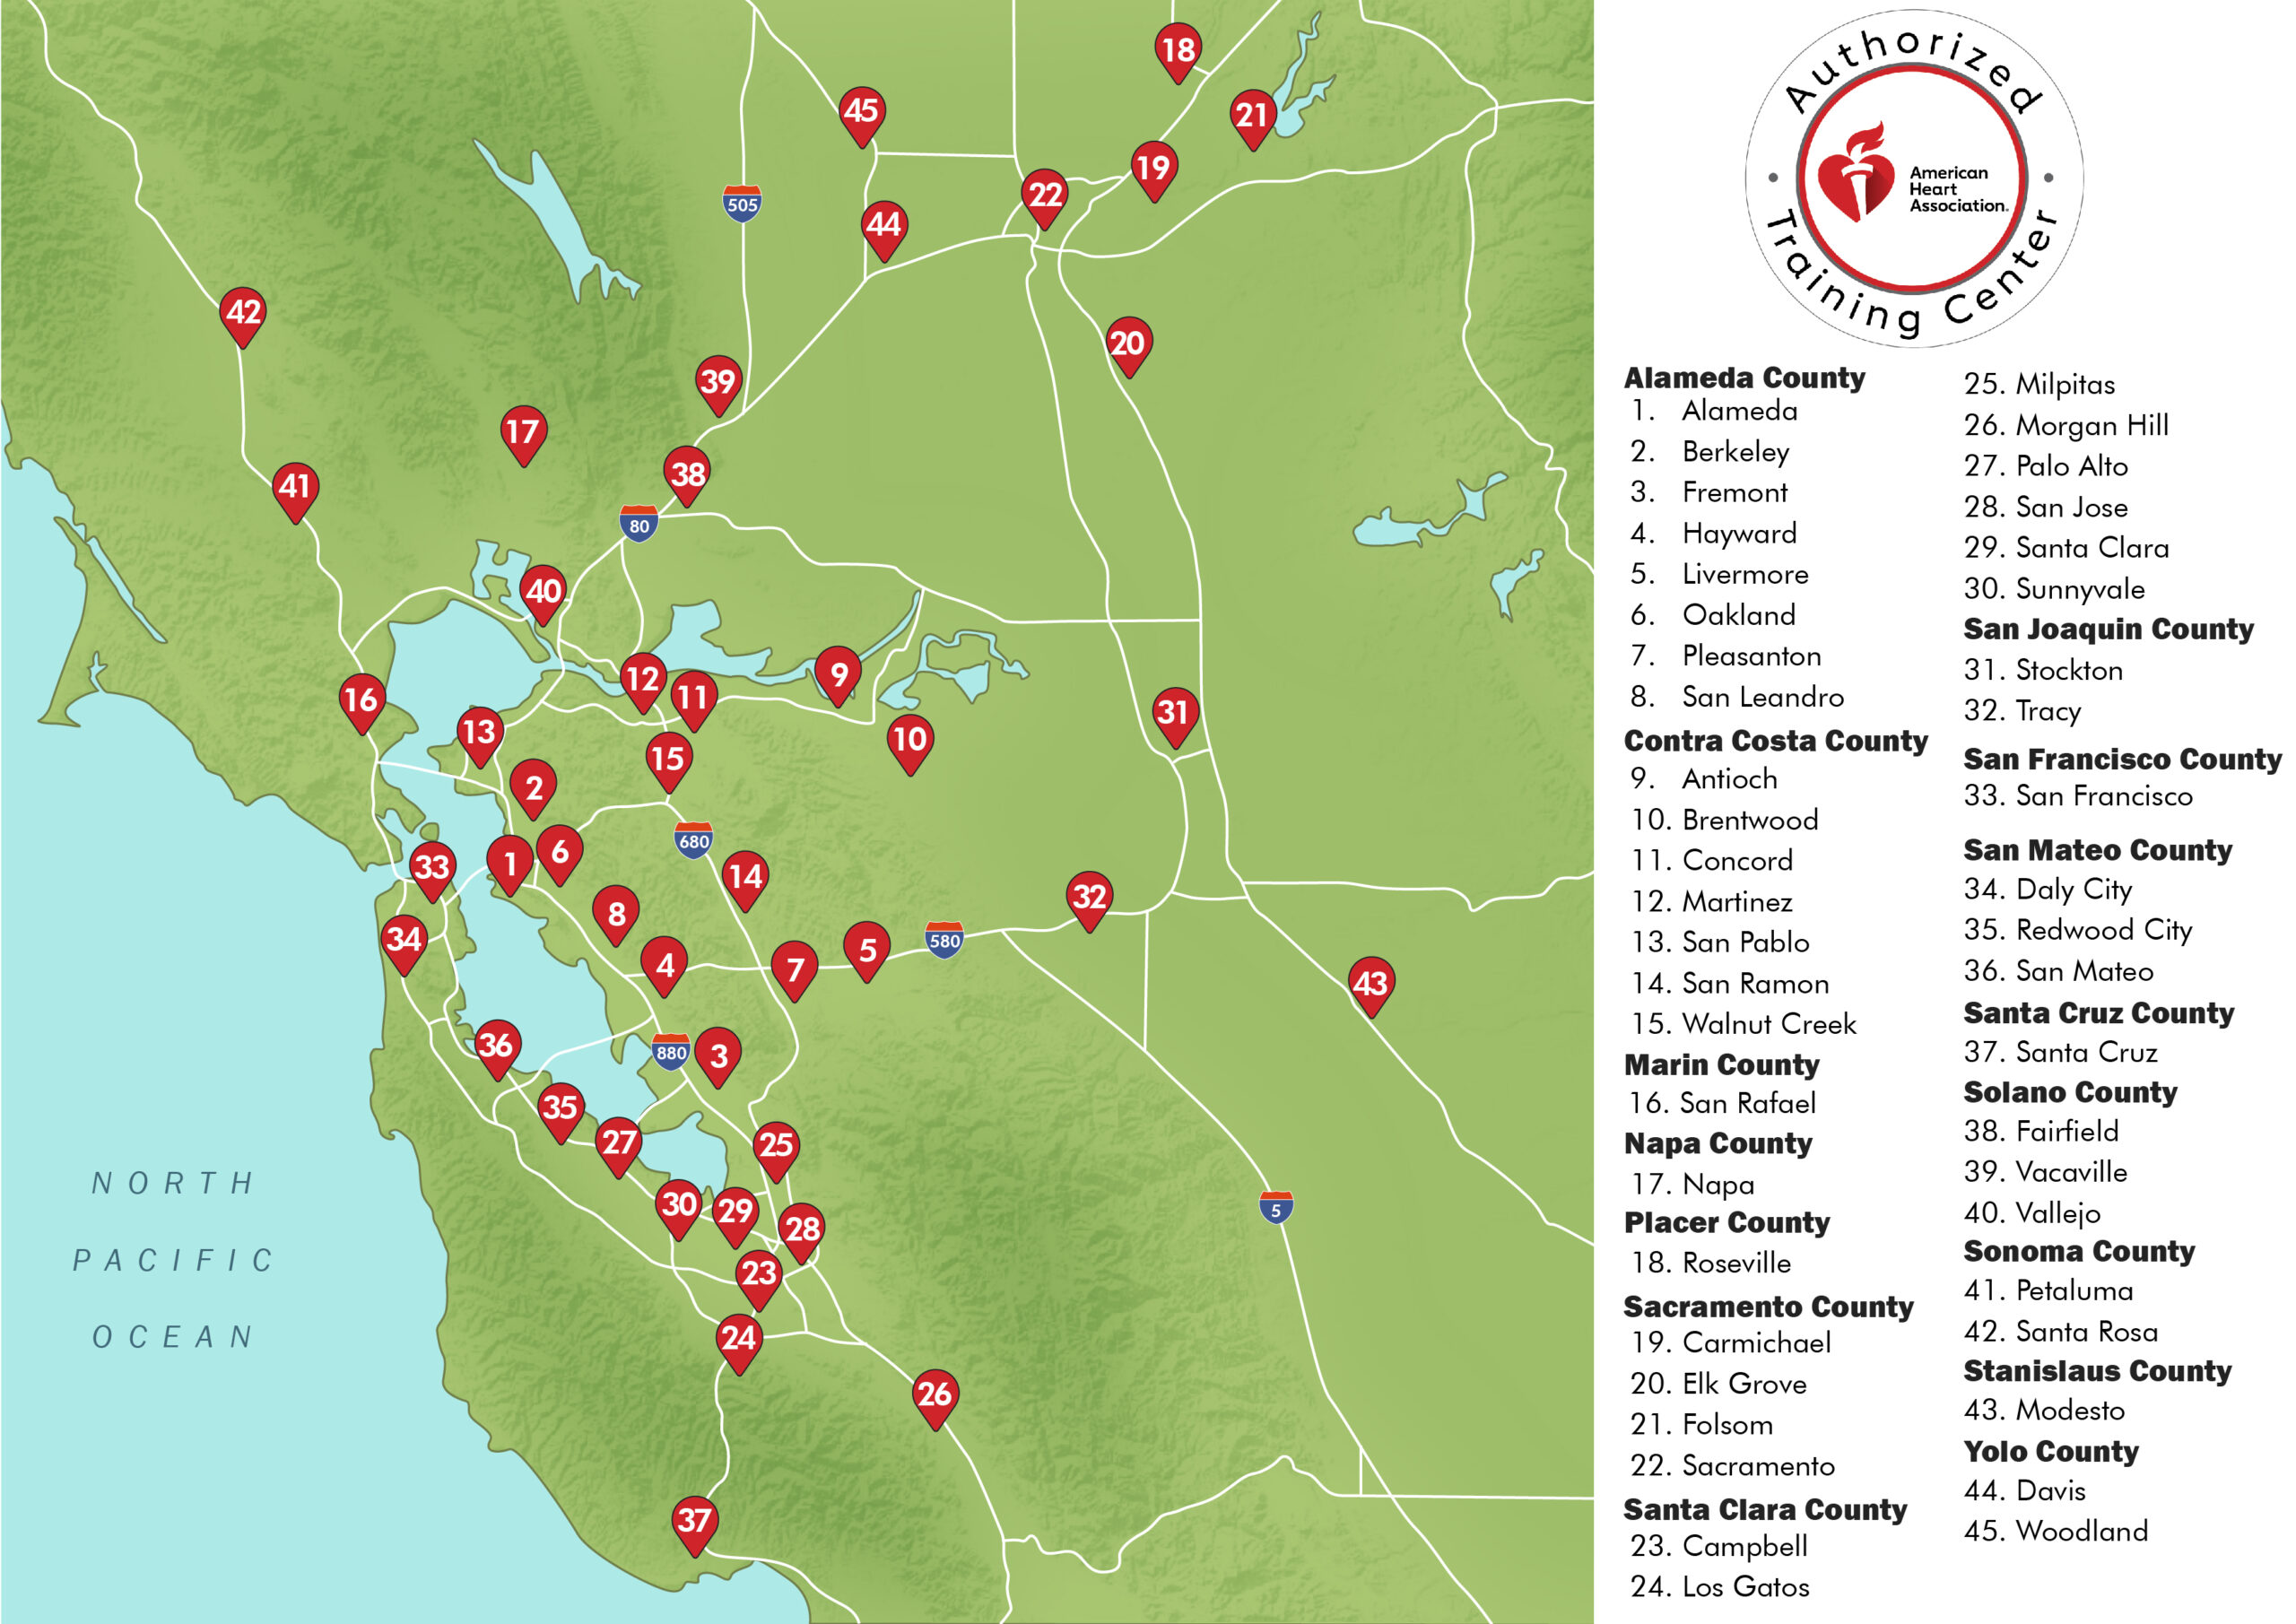 CPR Classes in SF Bay Area